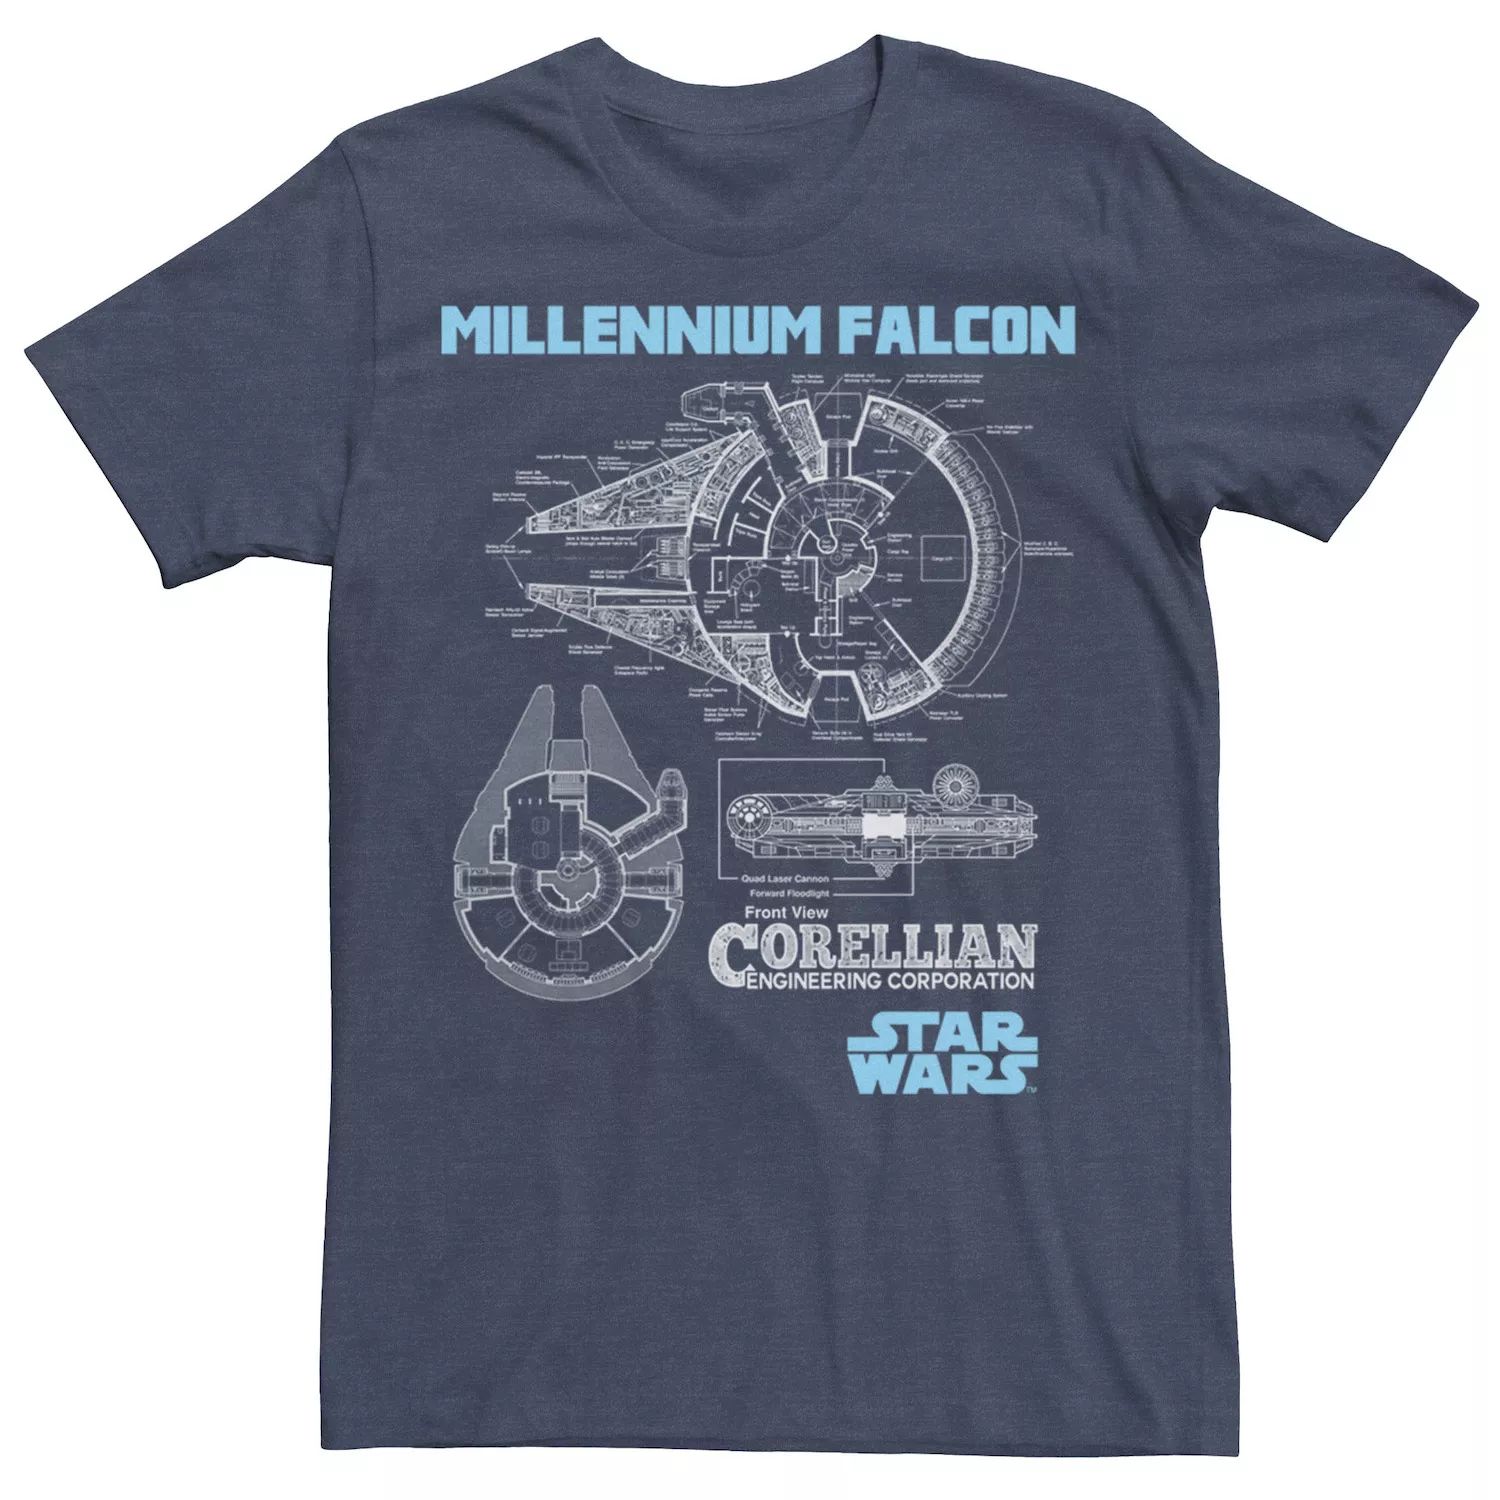 Мужская футболка с изображением кореллианского торгового корабля «Сокол тысячелетия» Star Wars мужская футболка с картами таро сокол тысячелетия star wars